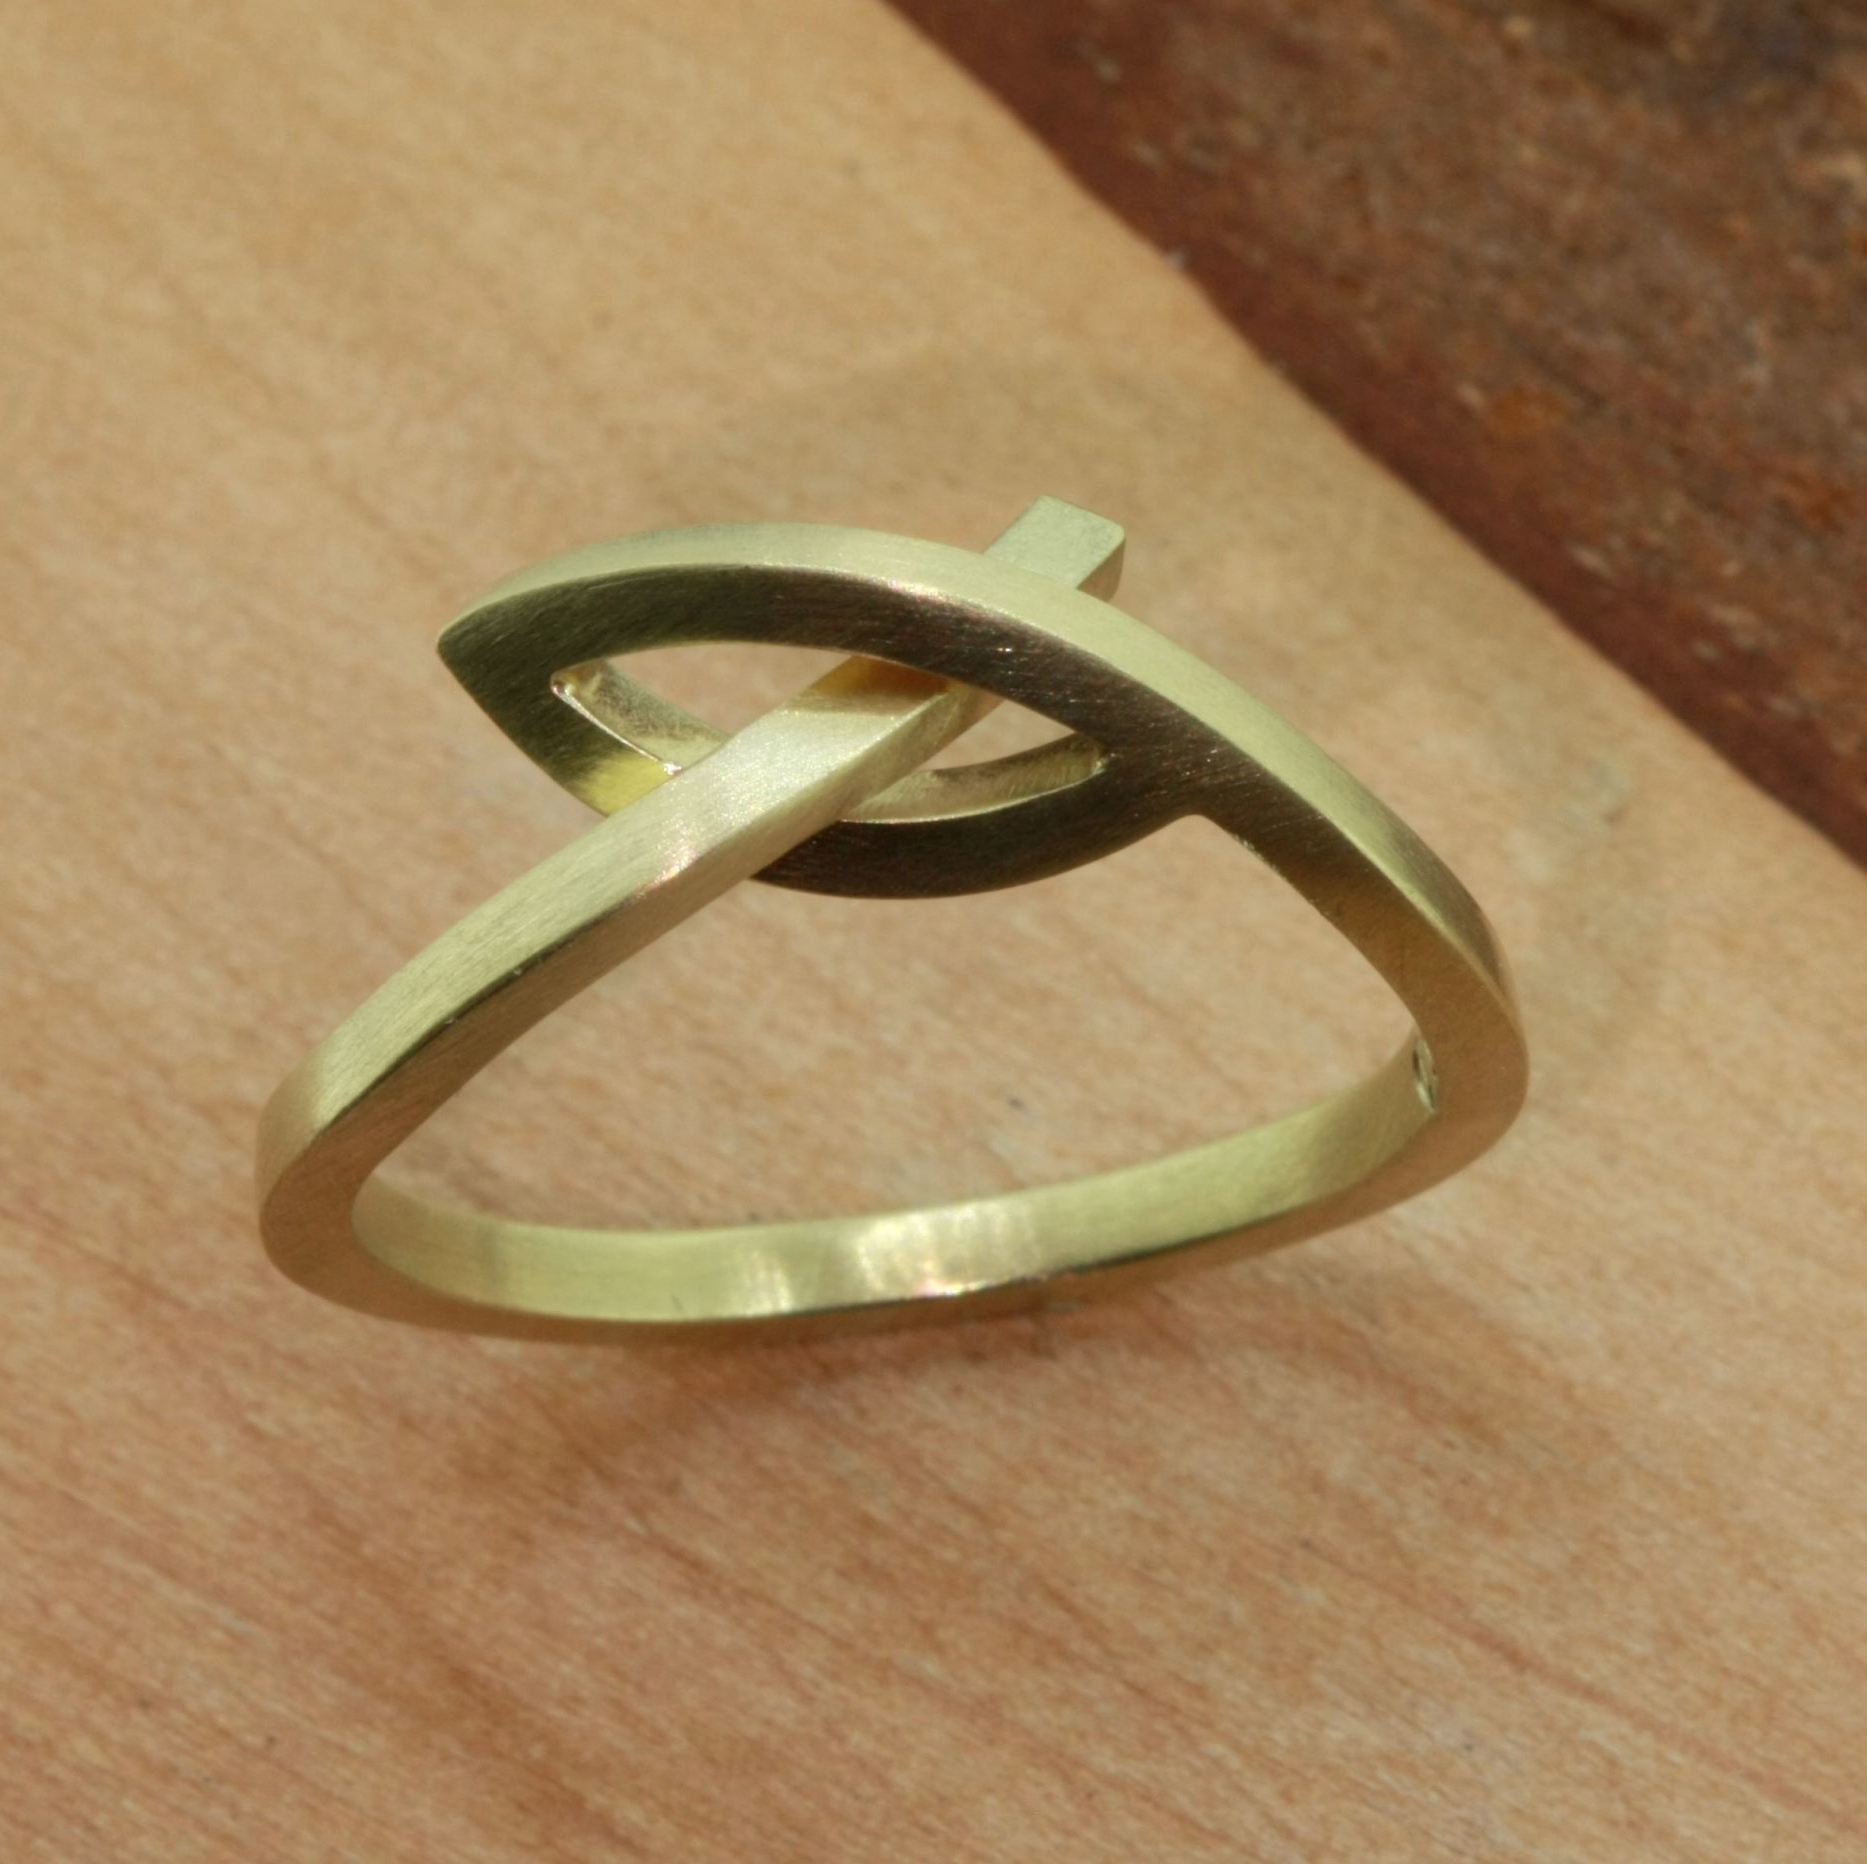 Ring Design in Gold 585 Handarbeit wurlitzer schmuck